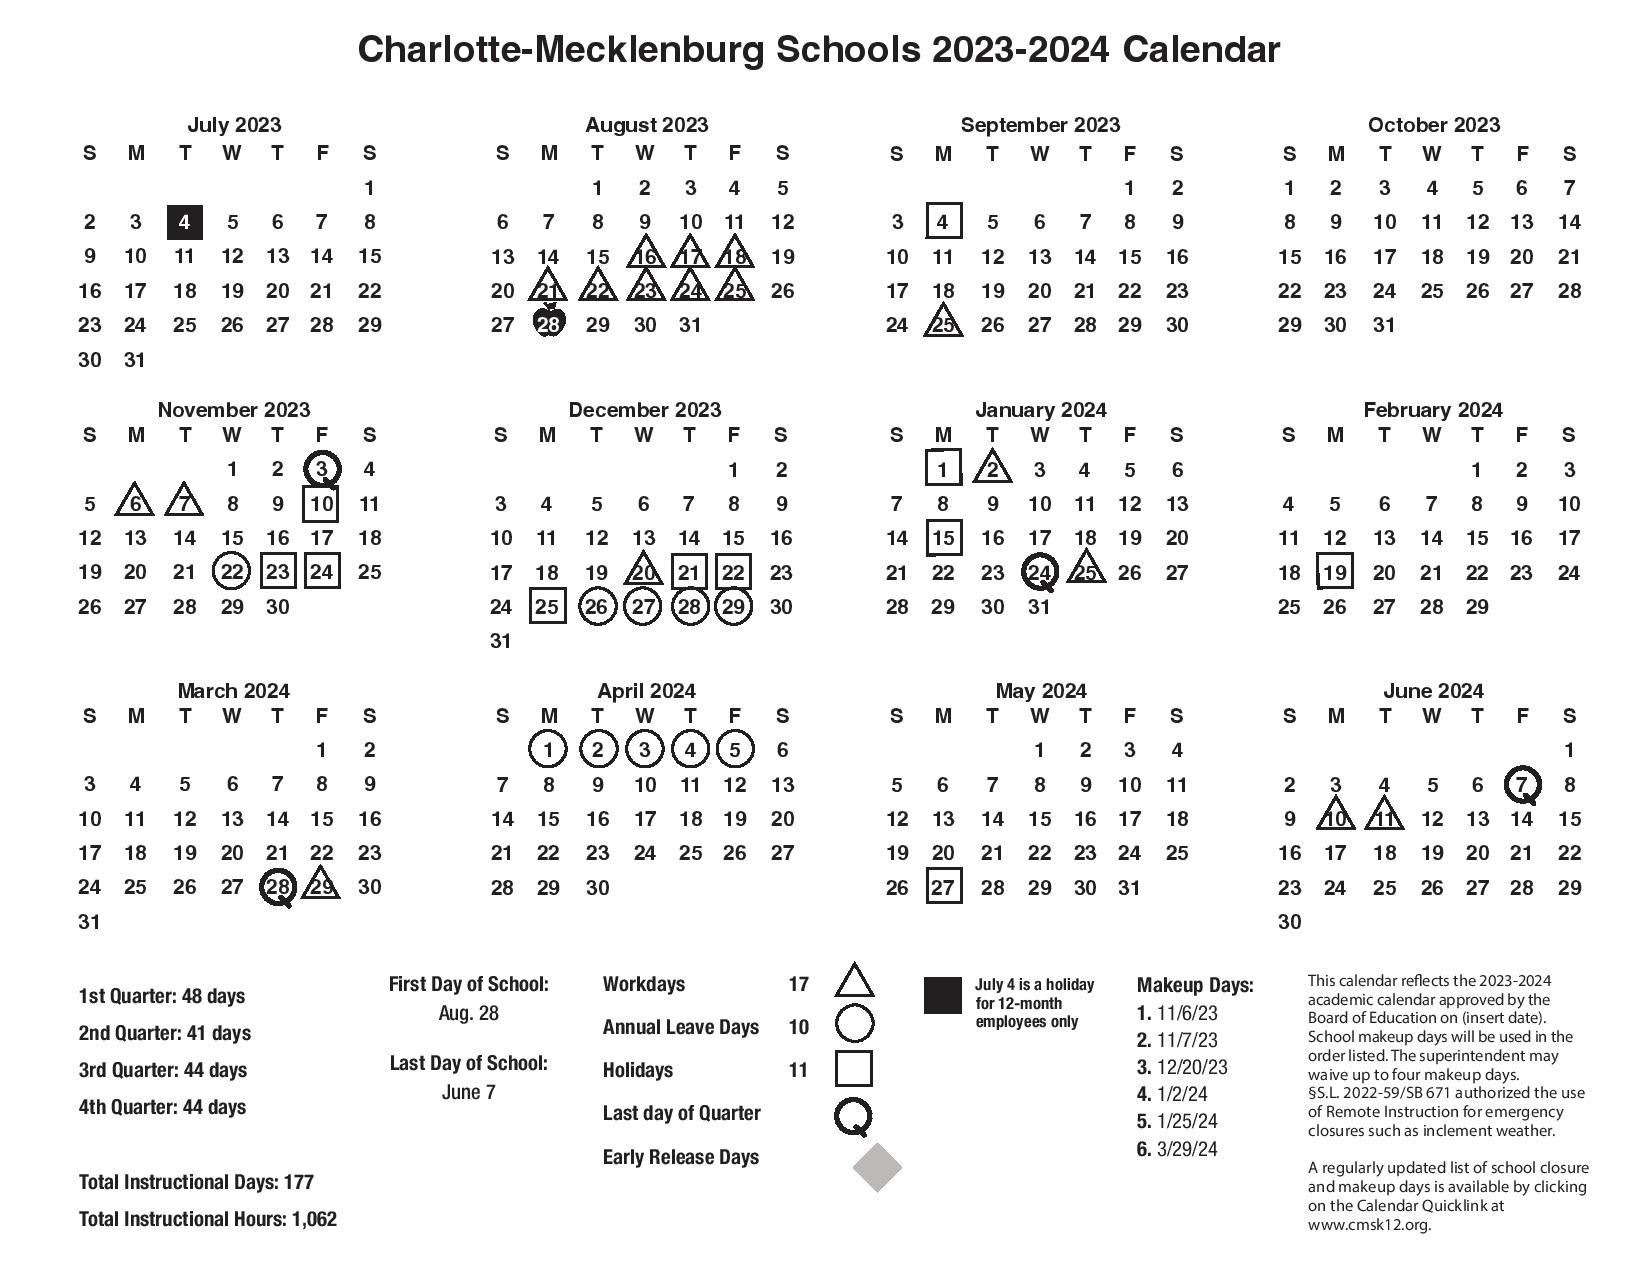 CMS Schools Calendar 2023-2024 | Charlotte-Mecklenburg Schools